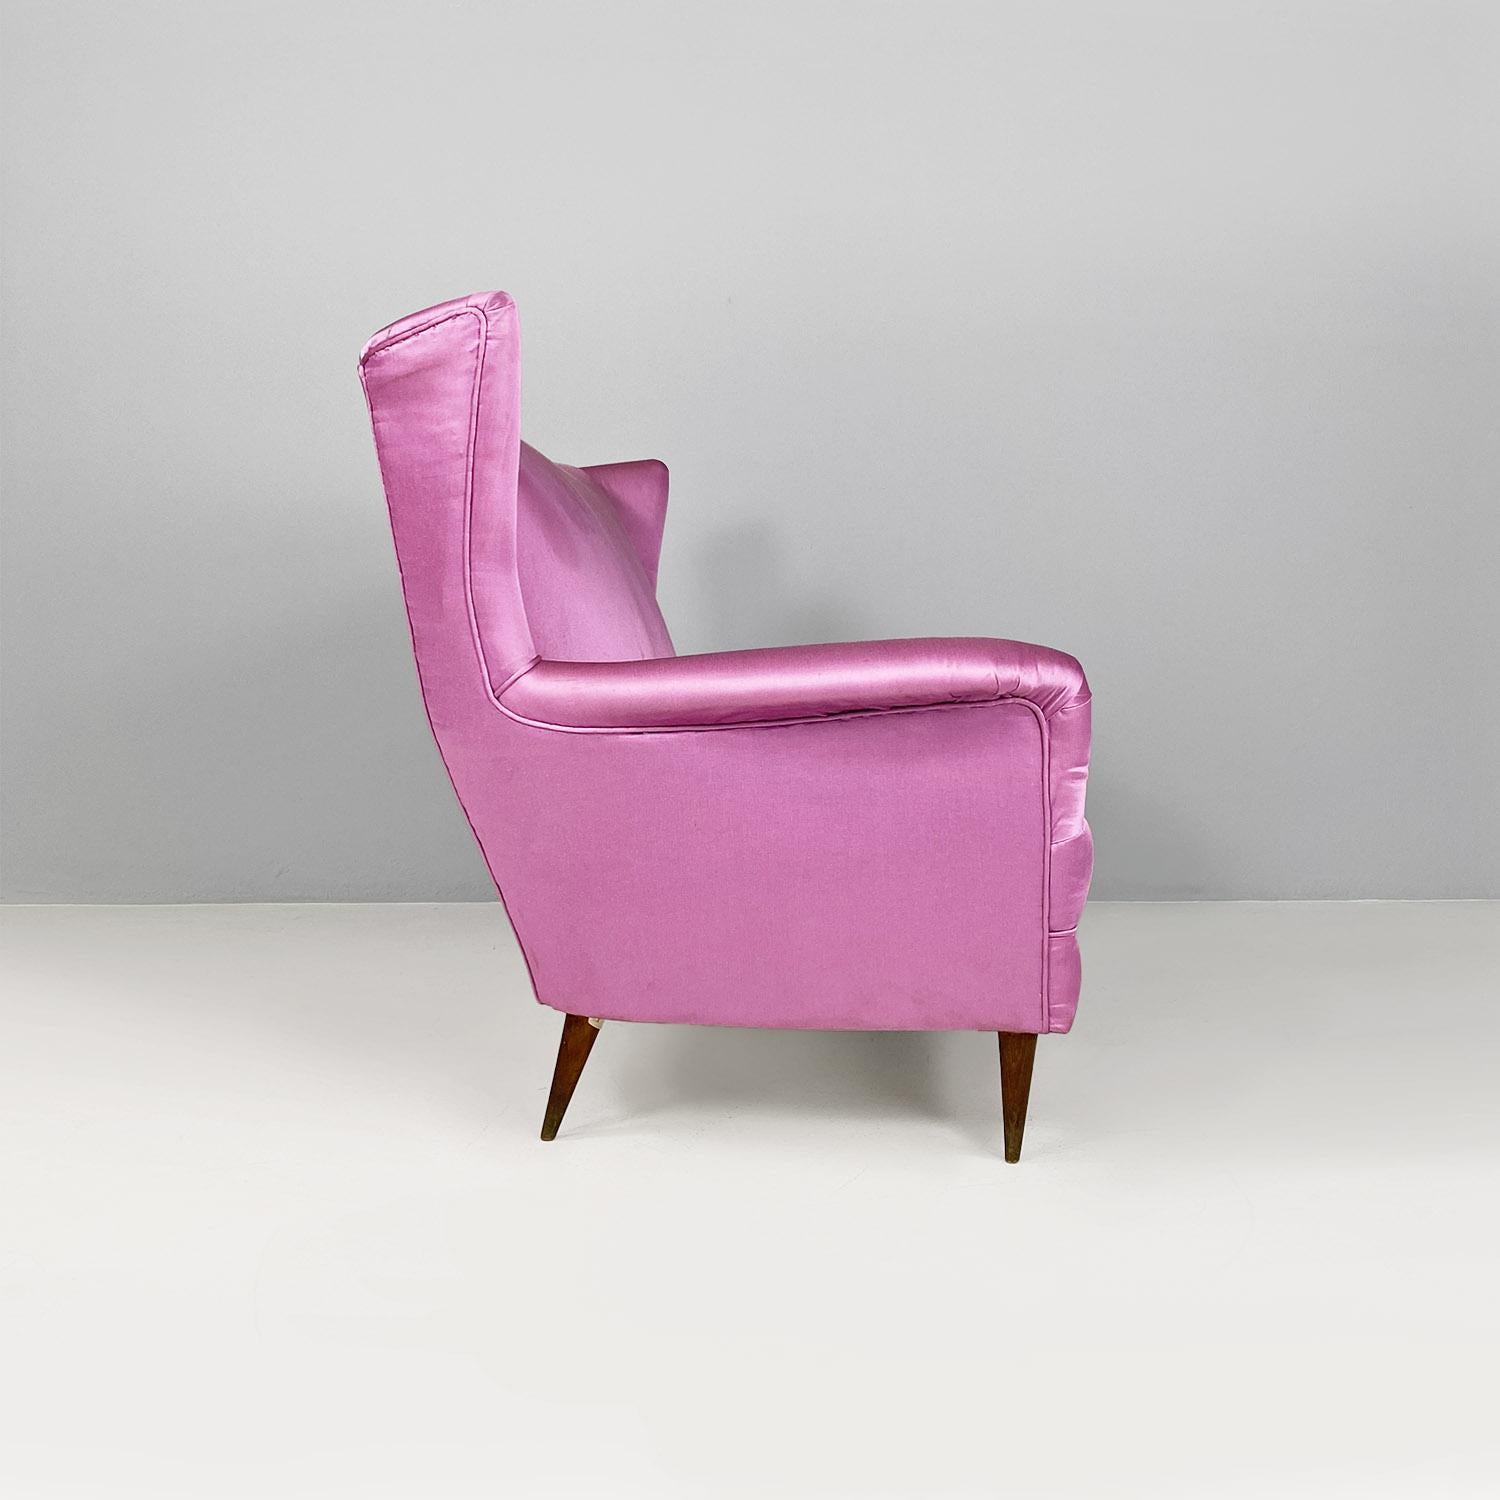 Divano due posti, modernariato italiano, in seta rosa e piedini in legno, 1950s In Good Condition For Sale In MIlano, IT